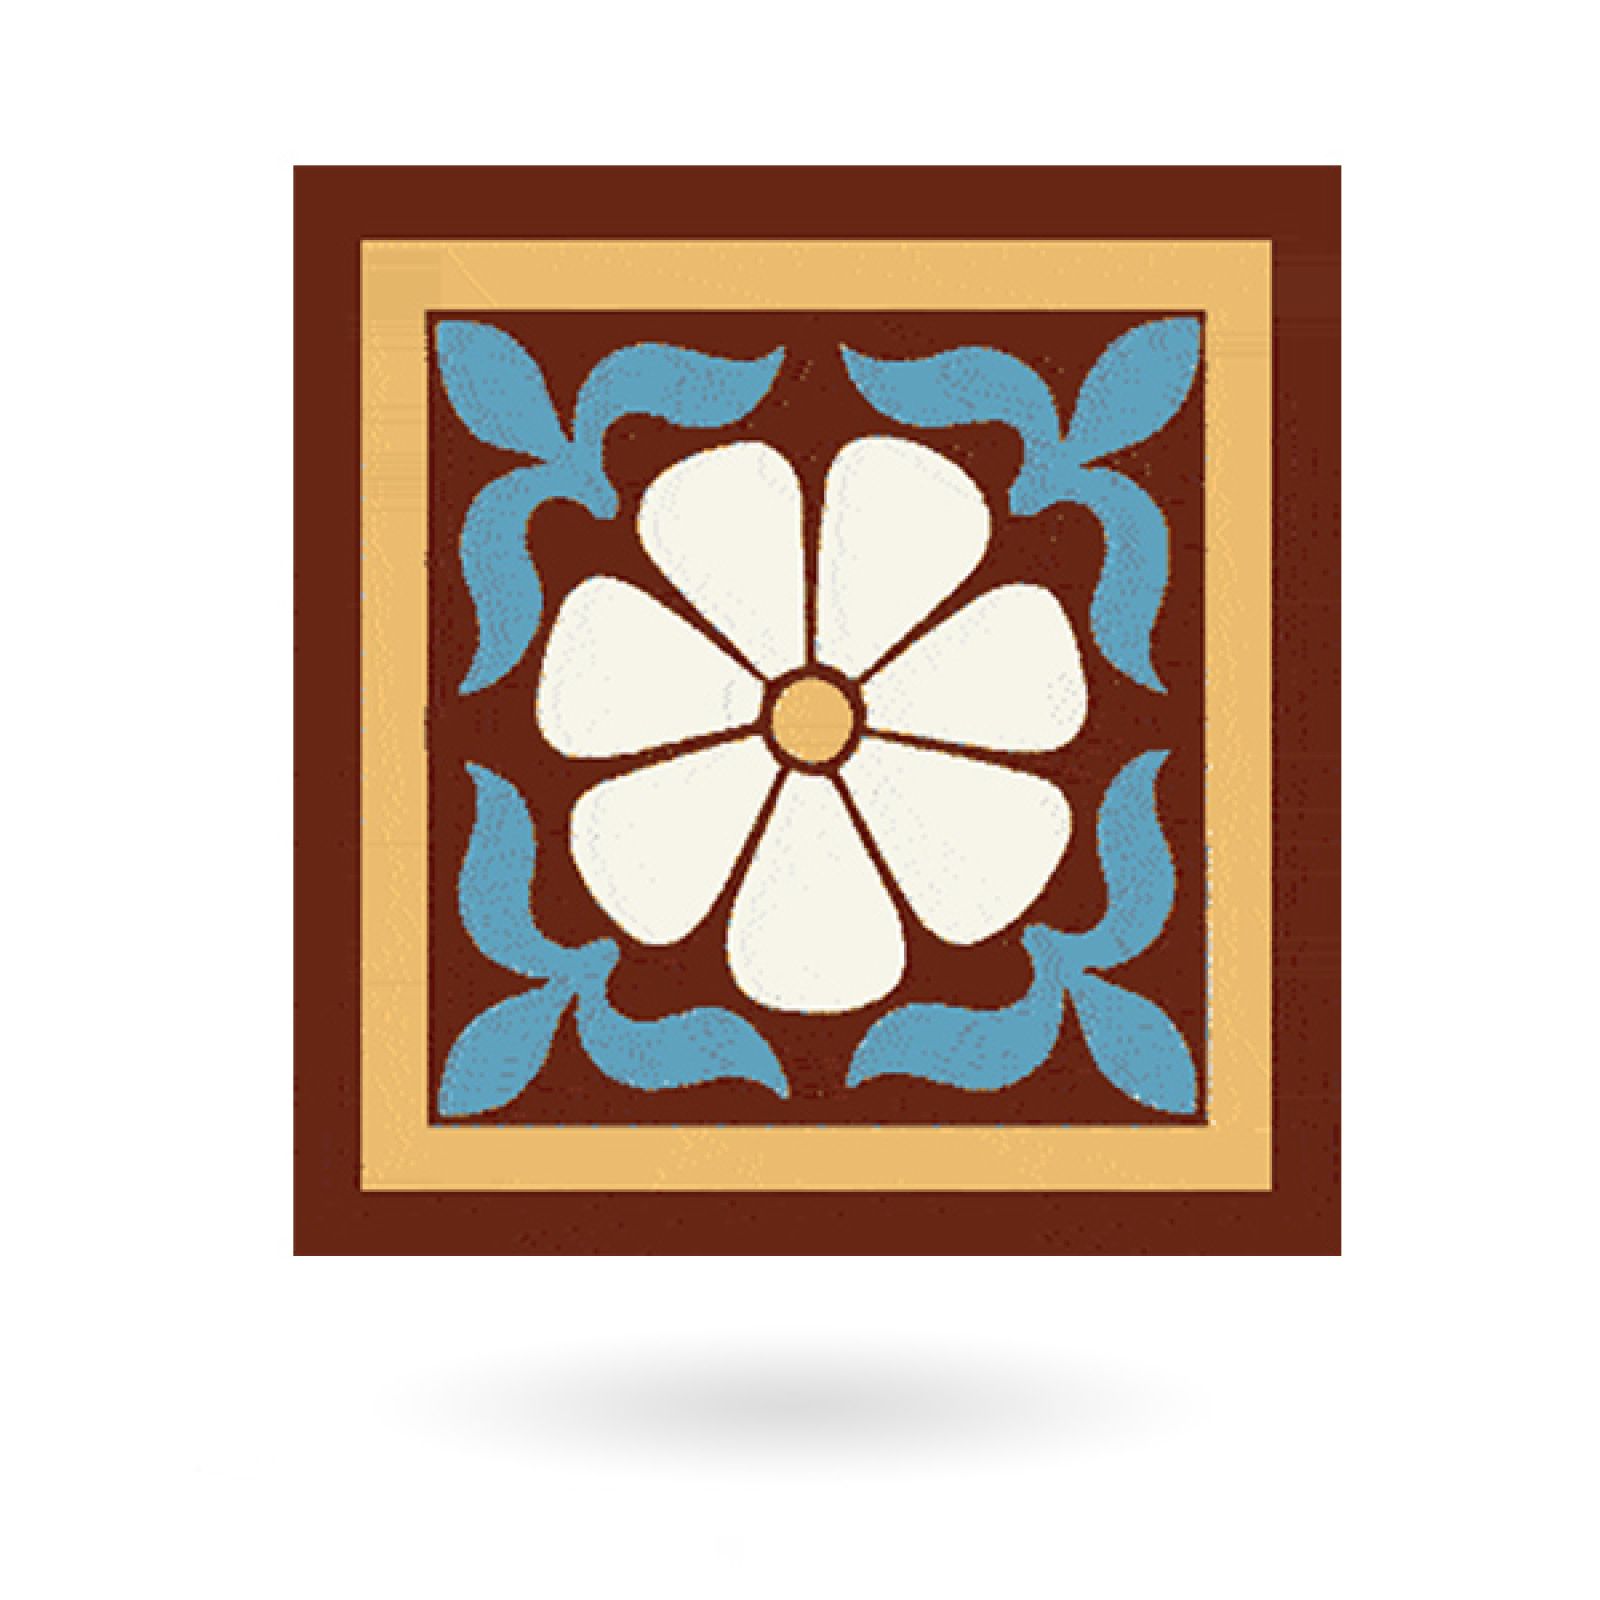 Encaustic 6” square tile - design 46